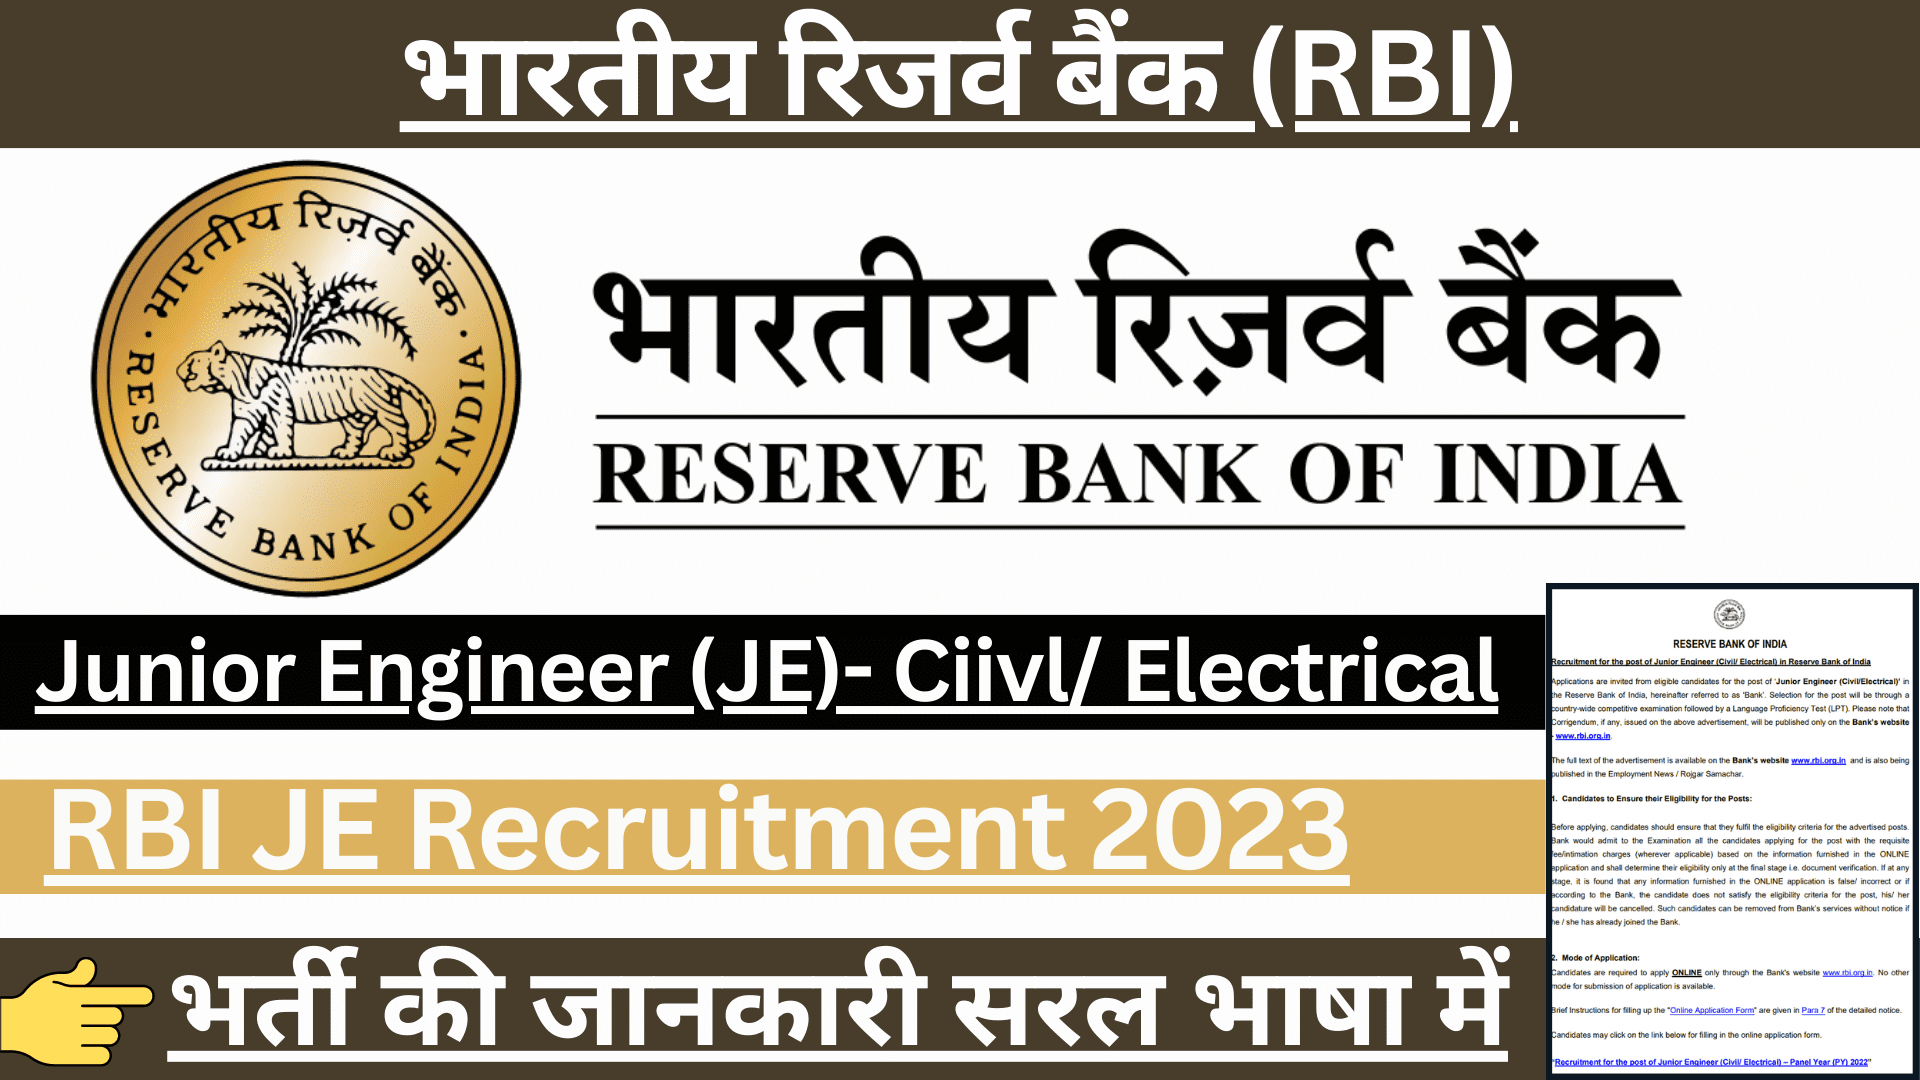 RBI JE Recruitment 2023